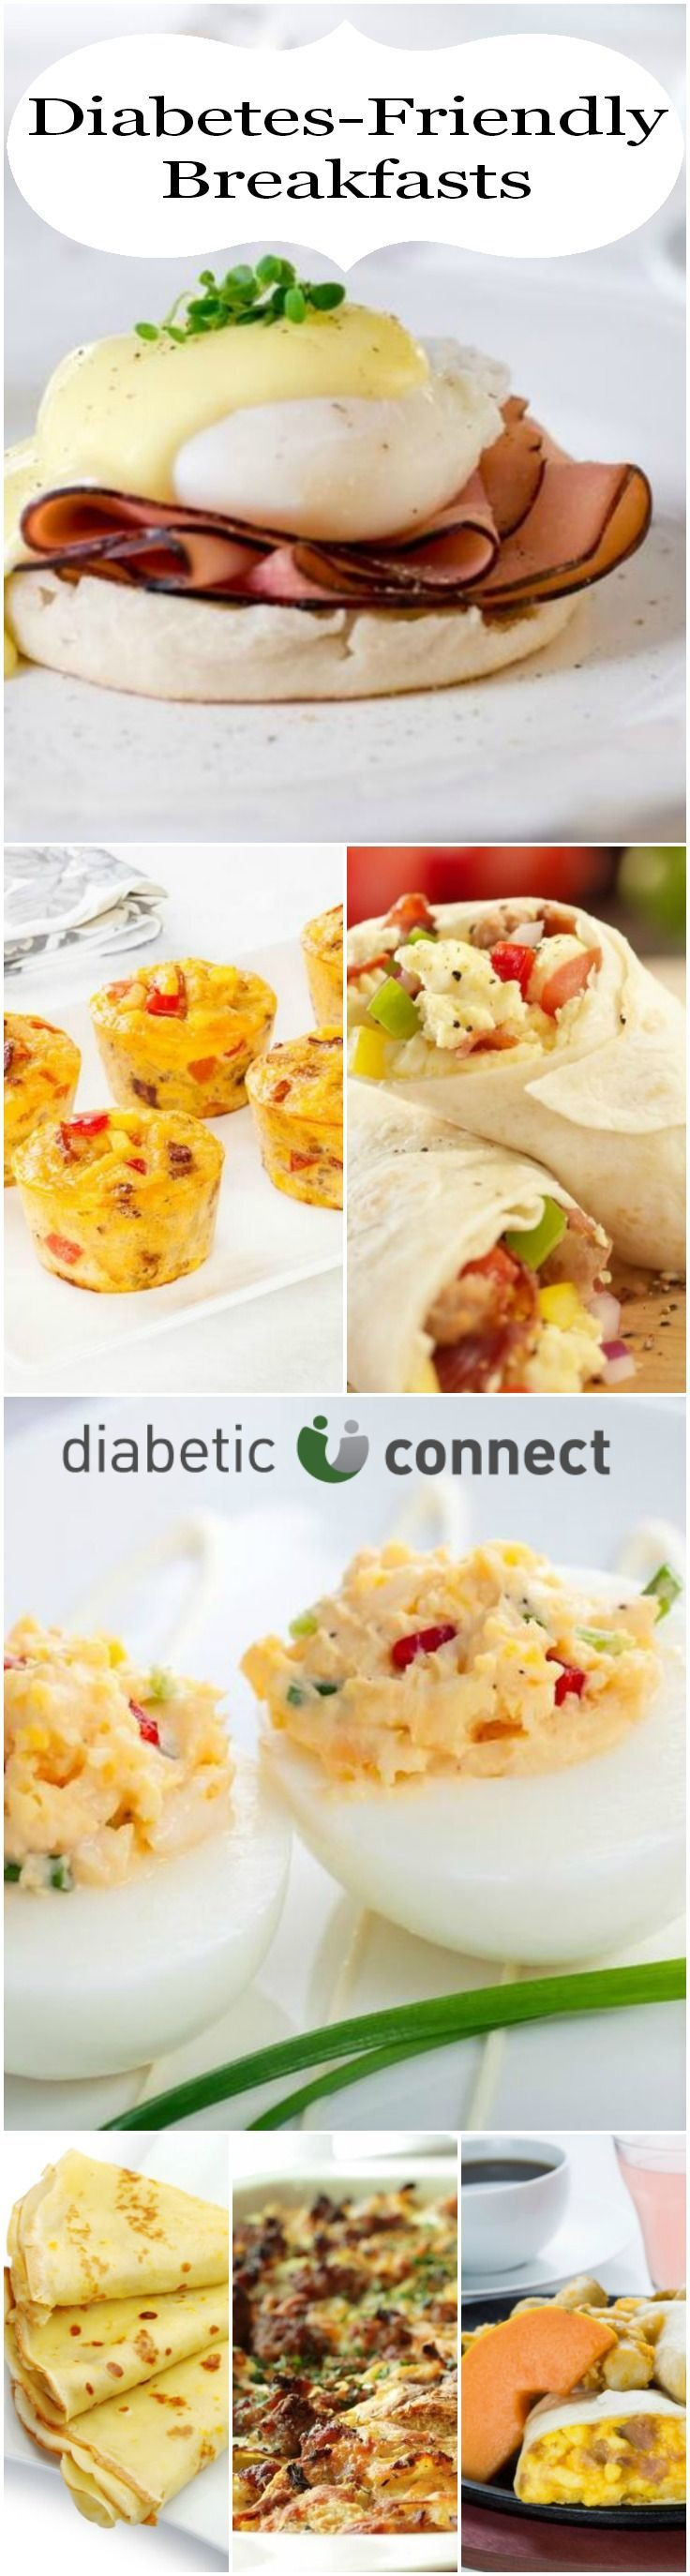 Diabetic Meal Recipes
 Diabetic breakfast ideas